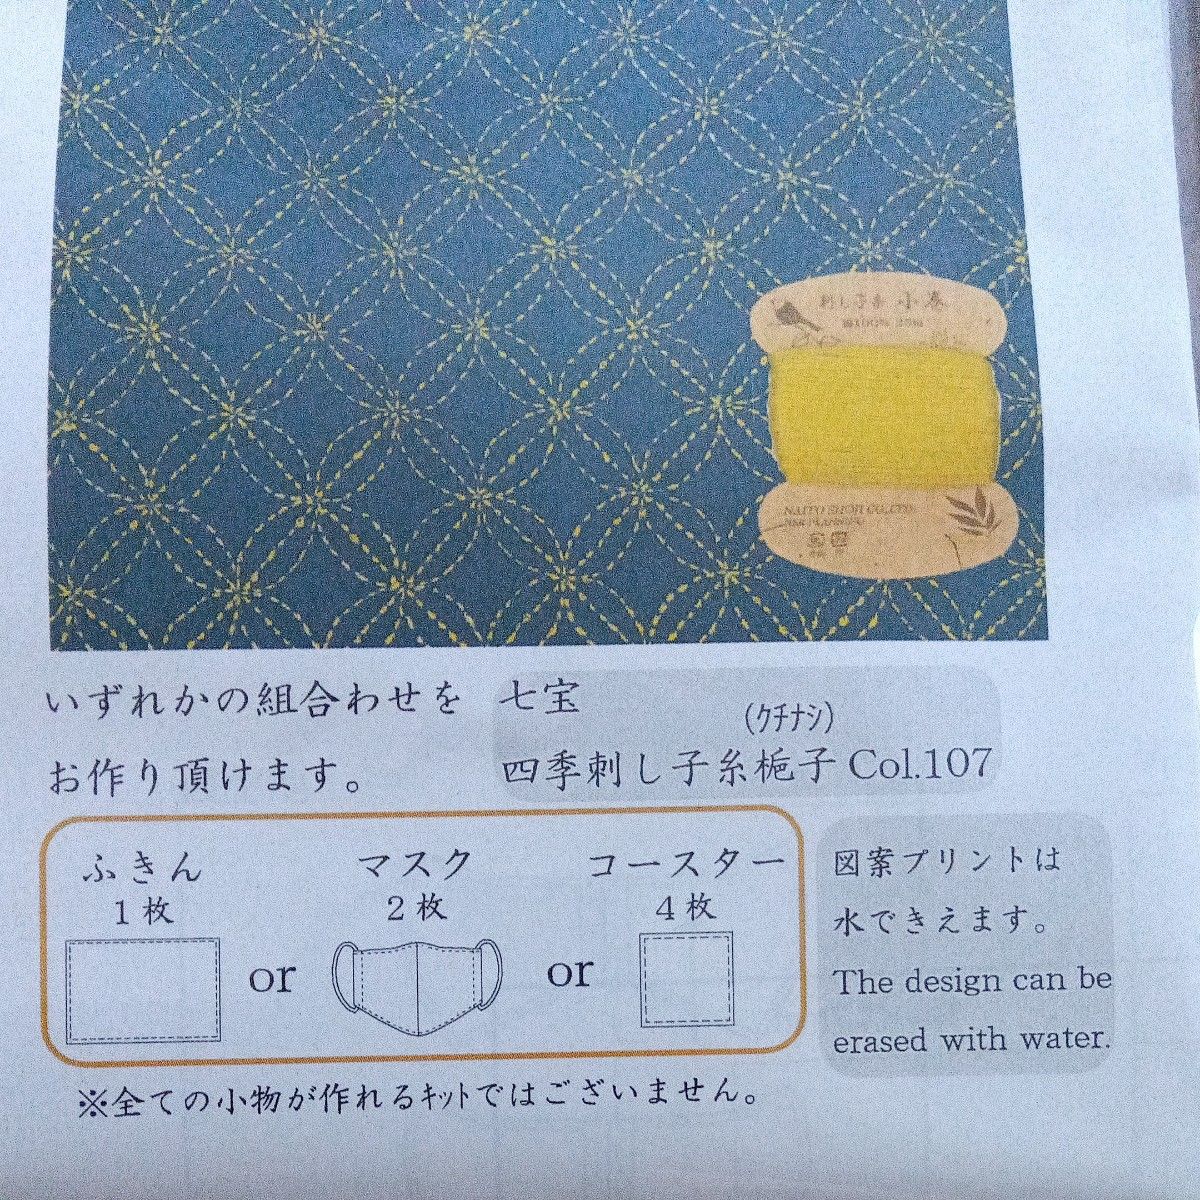 NASKA 刺し子四季カード巻きと刺し子布の小物キット (藍) 七宝 SS101